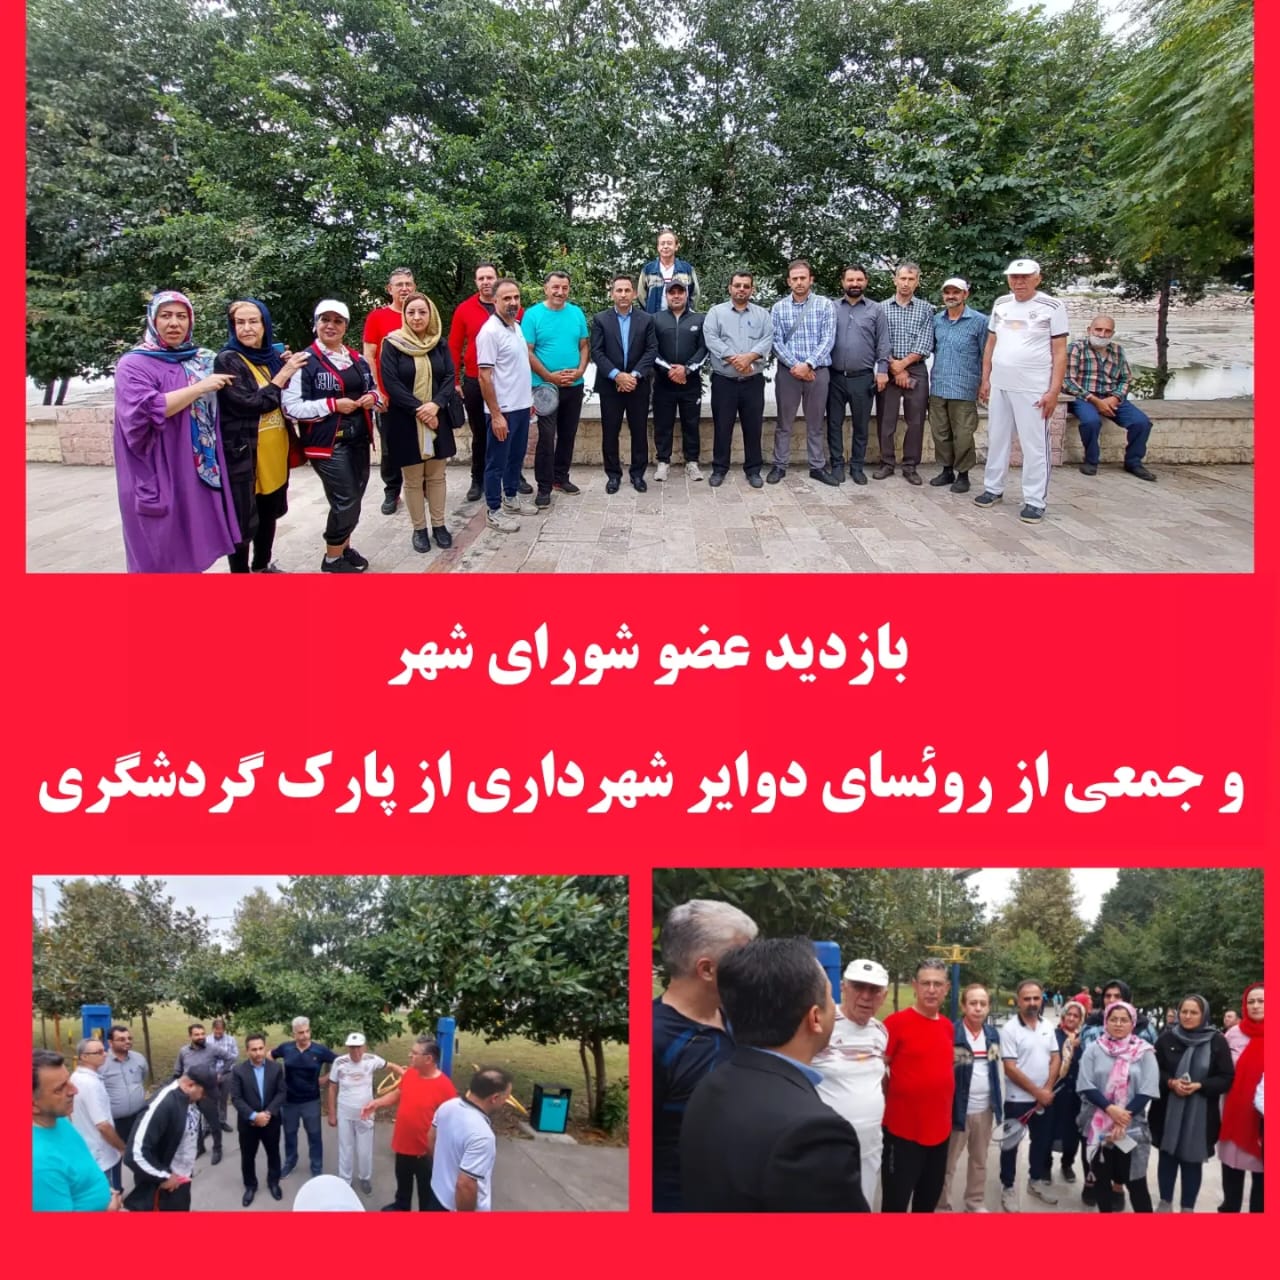 بازدید عضو شورای شهر بهمراه جمعی از روئسای دوایر شهرداری از پارک گردشگری چشمه کیله و گفتگو با شهروندان 